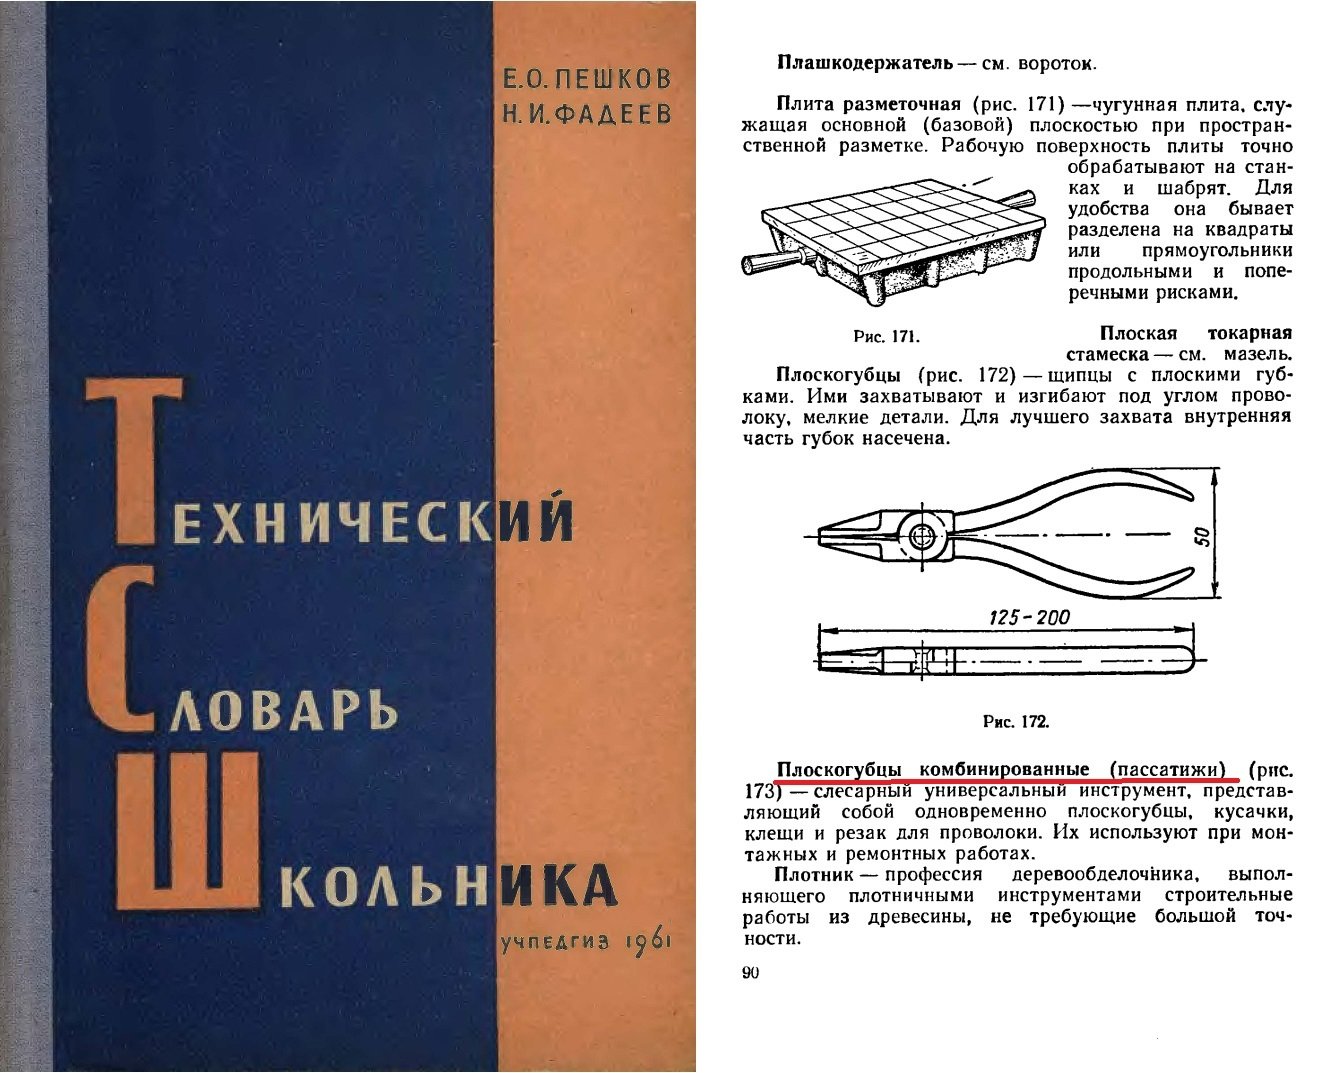 34 Школьный словарь 1961 г.jpg